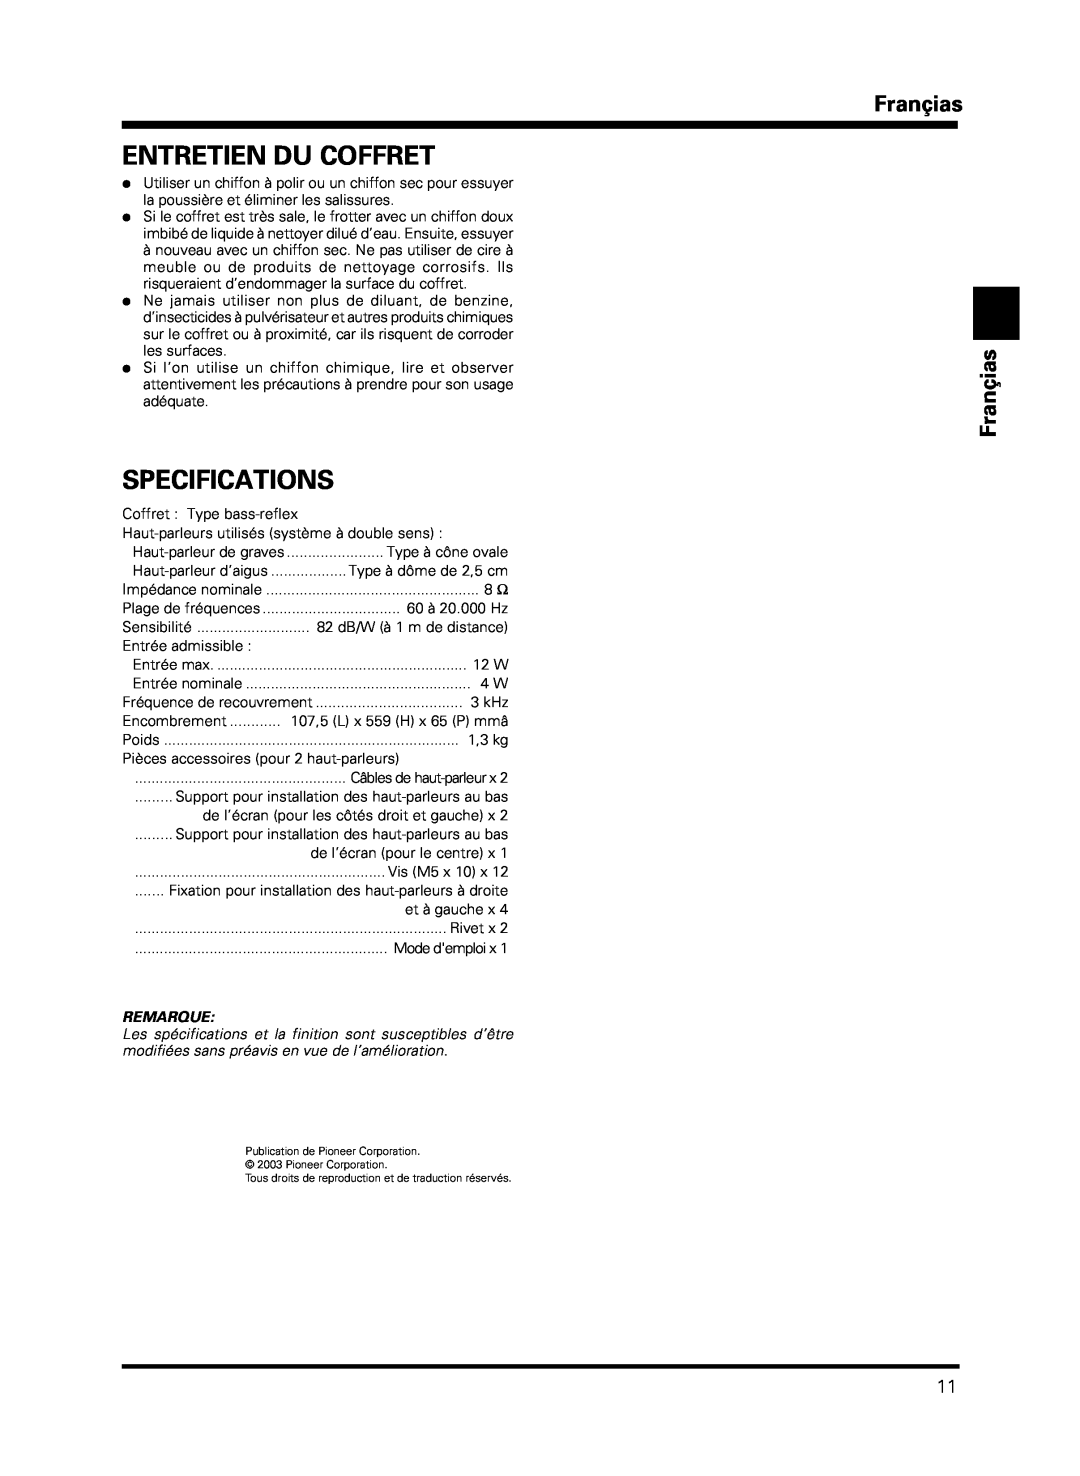 Pioneer PDP-S13-LR manual Entretien Du Coffret, Françias Françias, Specifications, Remarque, Haut-parleur de graves 